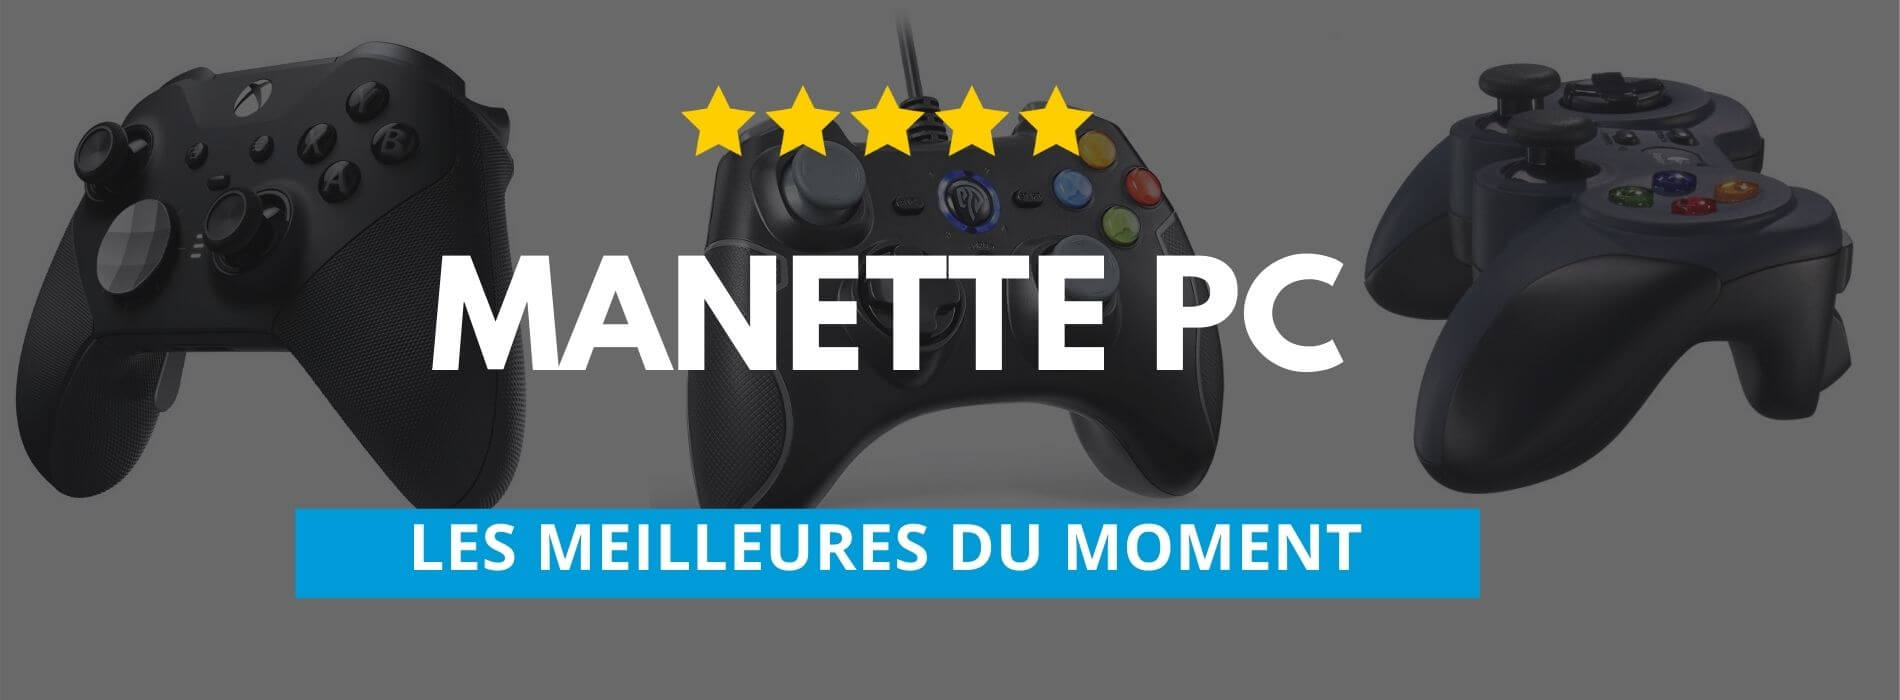 Manette PC : Les meilleurs modèles pour jouer sur votre machine - Le  Parisien